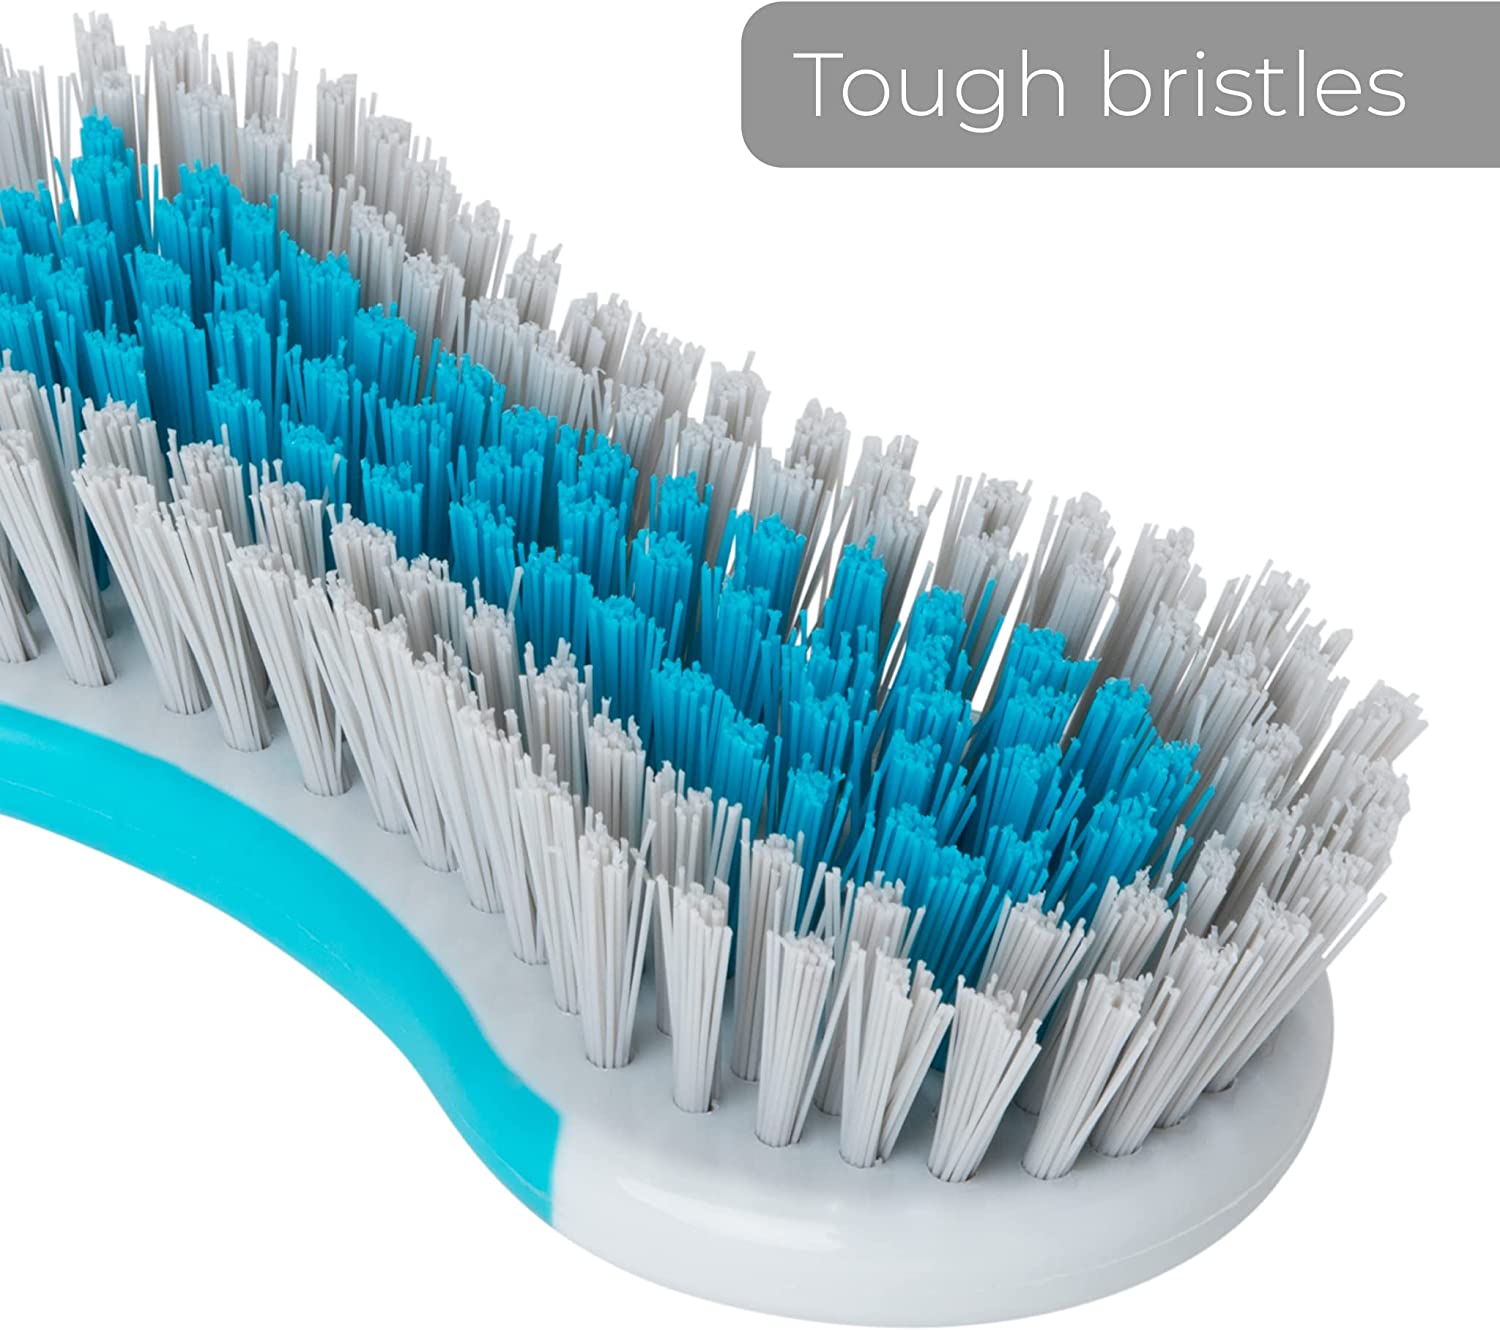 Stiff Bristle Brush 9 Blue